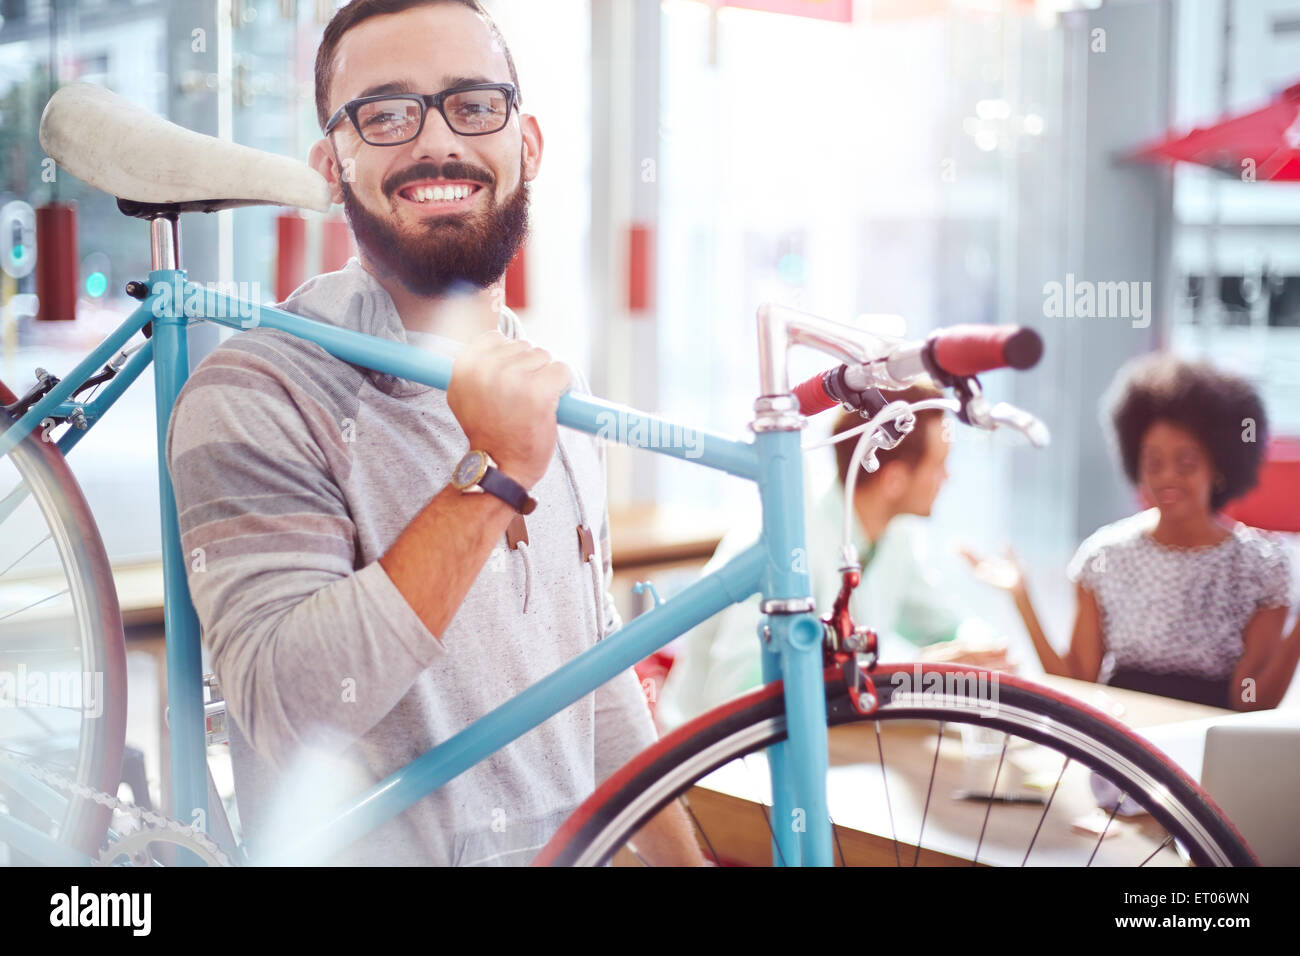 Hombre sonriente llevar bicicletas en cafe Foto de stock